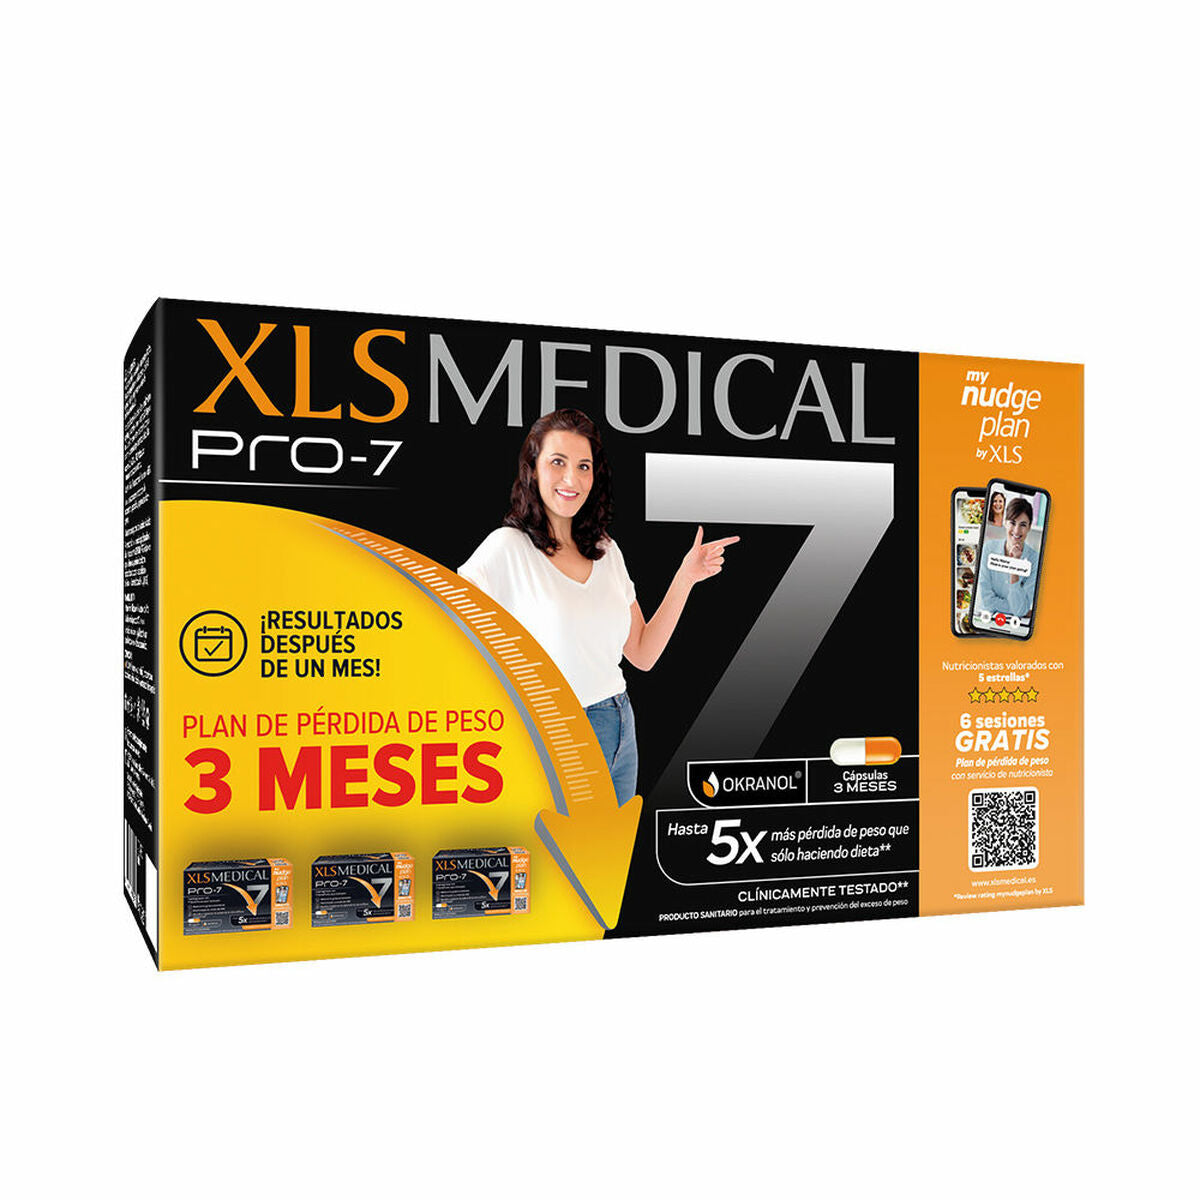 Пищевая добавка XLS Medical Pro-7 540 штук